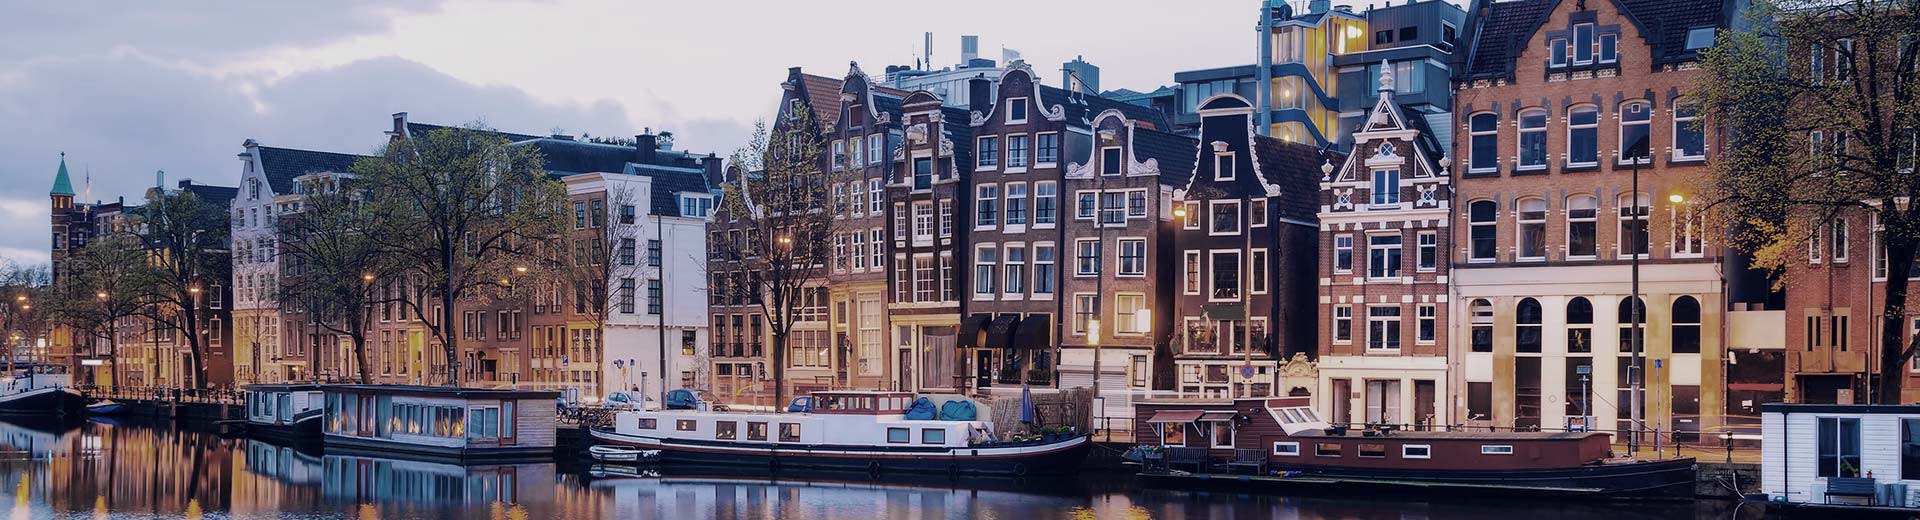 运河边停泊着游艇，游艇后面是一片荷兰风格的房屋。